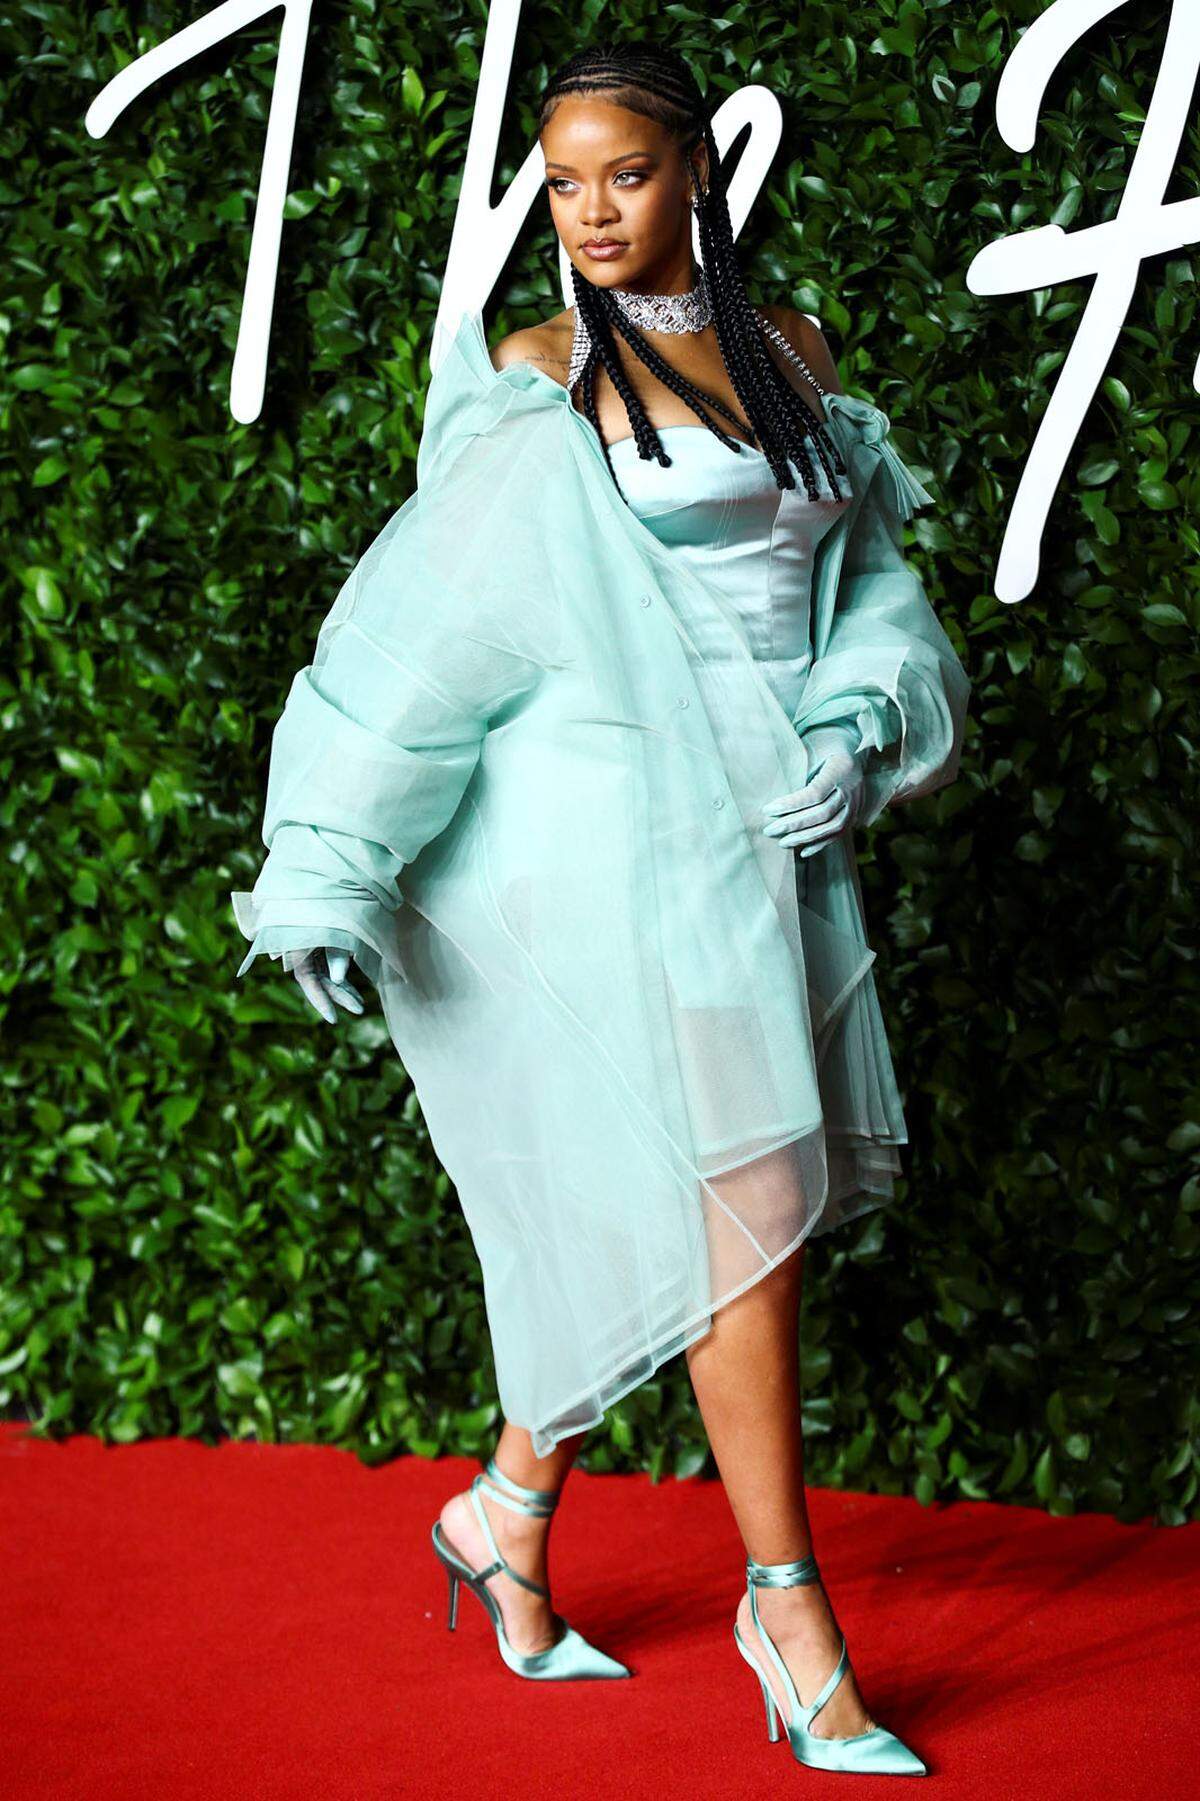 Zu den Preisträgern des Abends gehörte Rihanna. Sie wurde mit dem Urban Luxe Award für ihr Label Fenty geehrt. Überreicht wurde ihr die Statuette von Janet Jackson. 